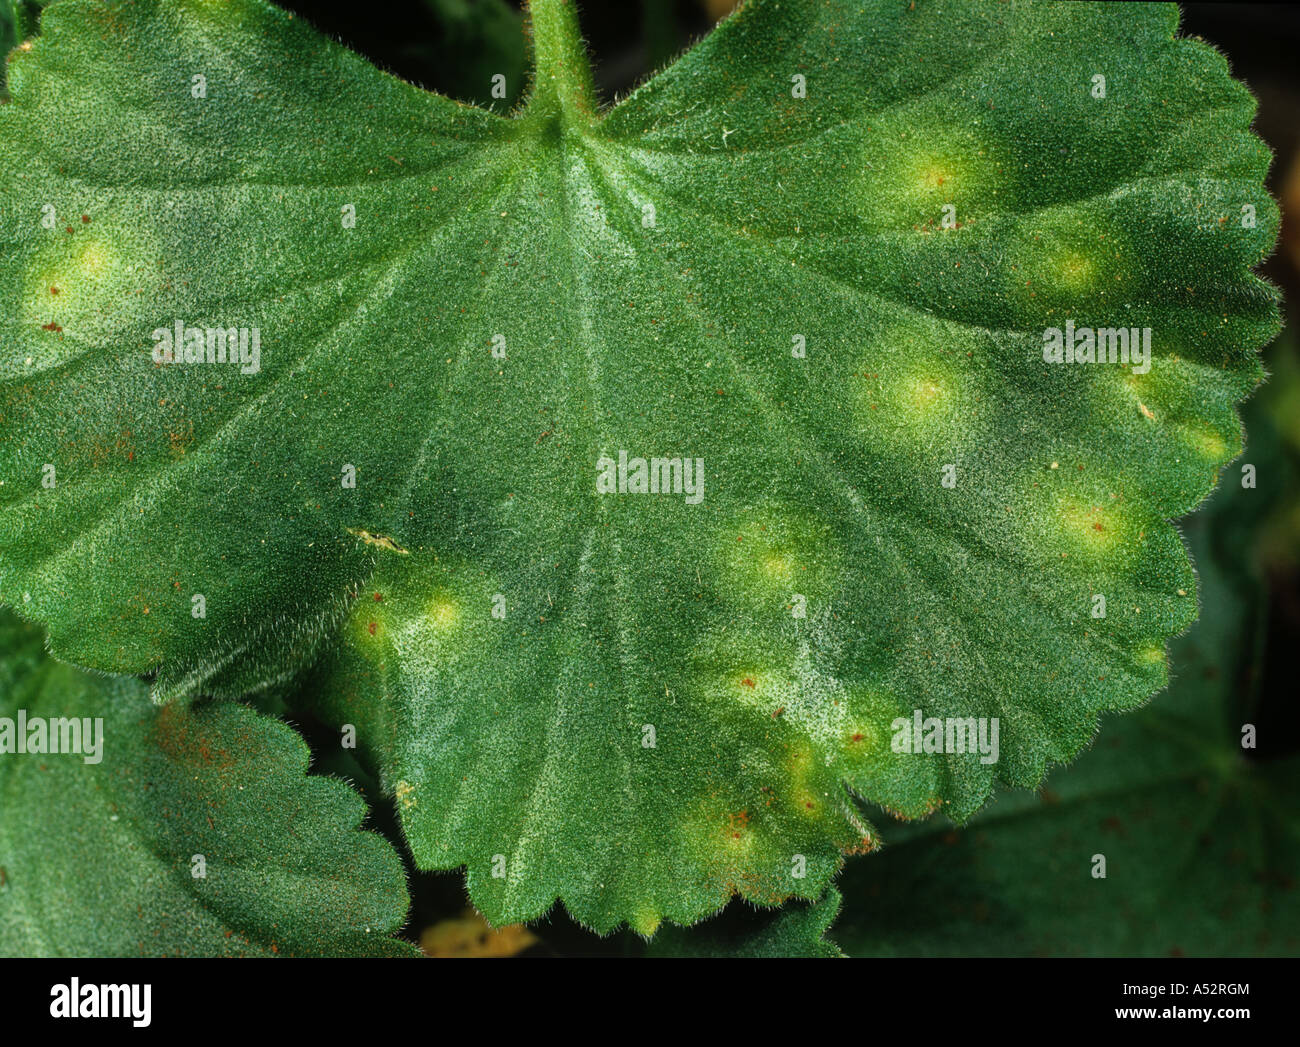 Pelargonium rust Puccinia pelargoni zonalis necrosis on upper surface of a pelargonium leaf Stock Photo